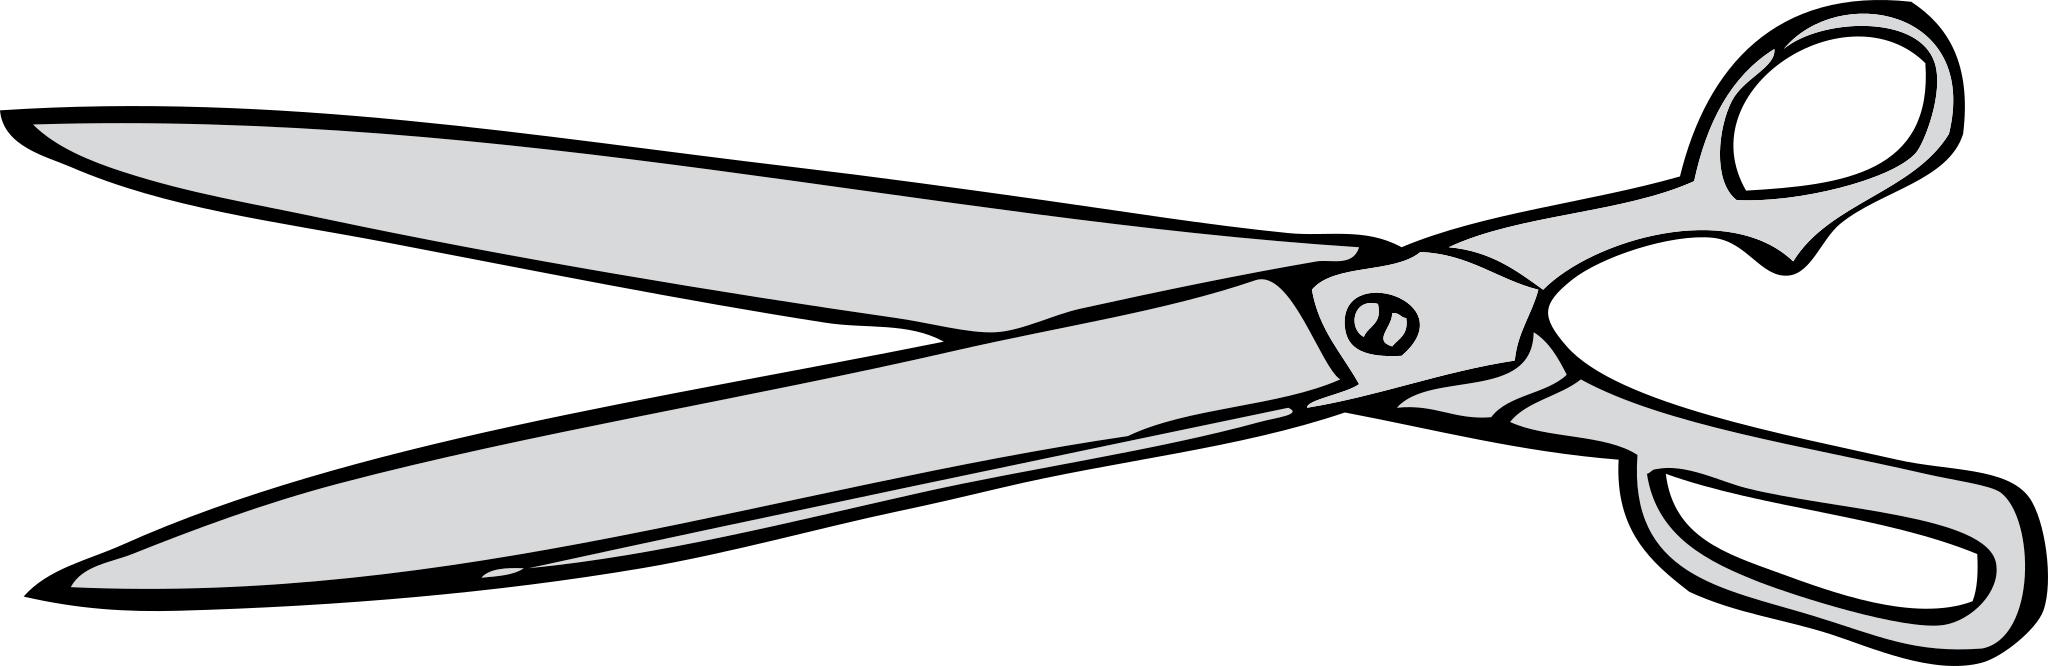 Схематичное изображение ножниц